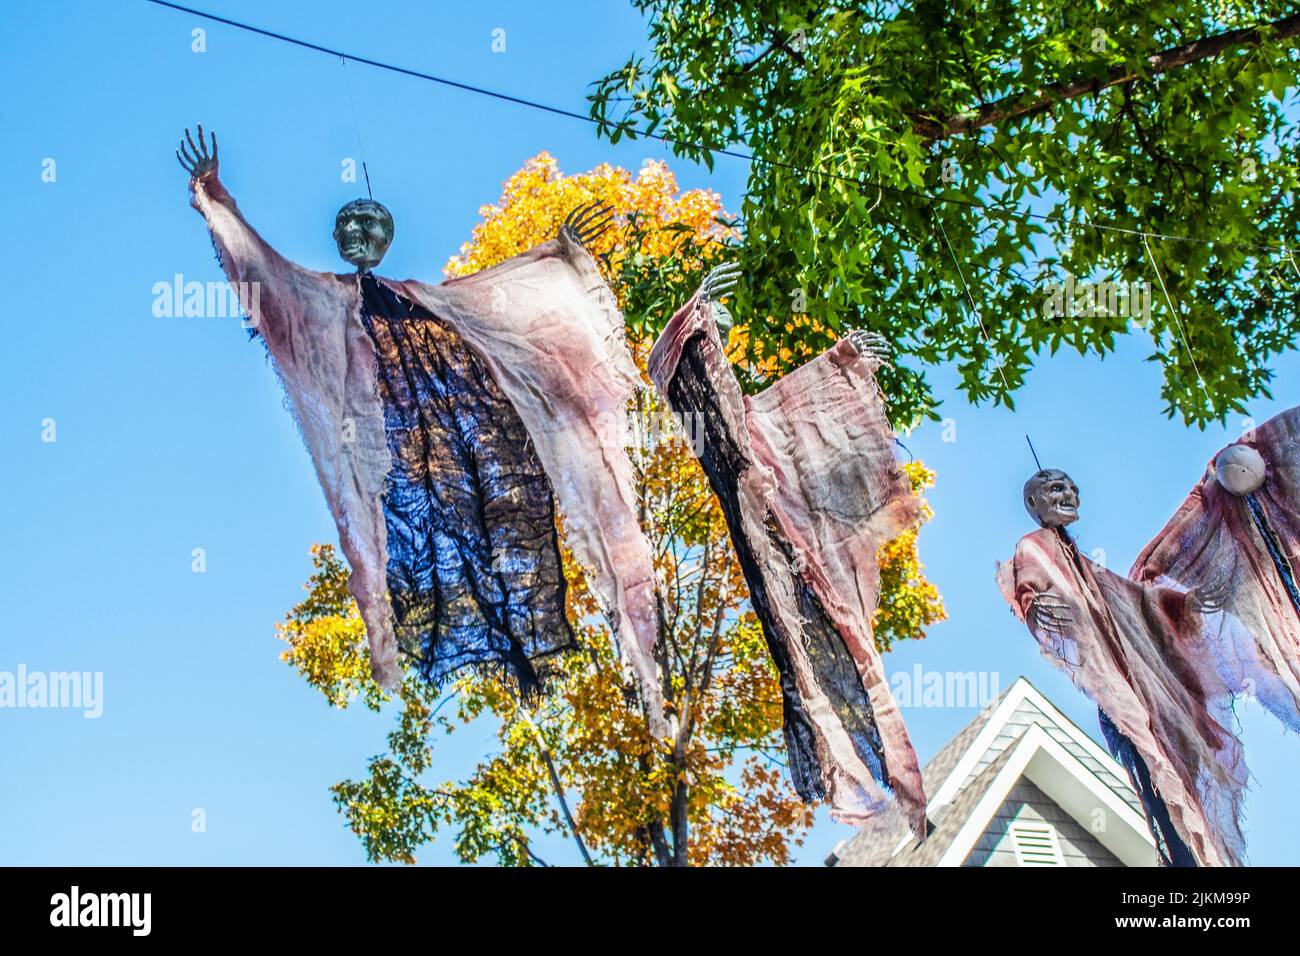 Zombis decorativos de Halloween colgando de árboles altos contra un cielo azul en un barrio americano Foto de stock